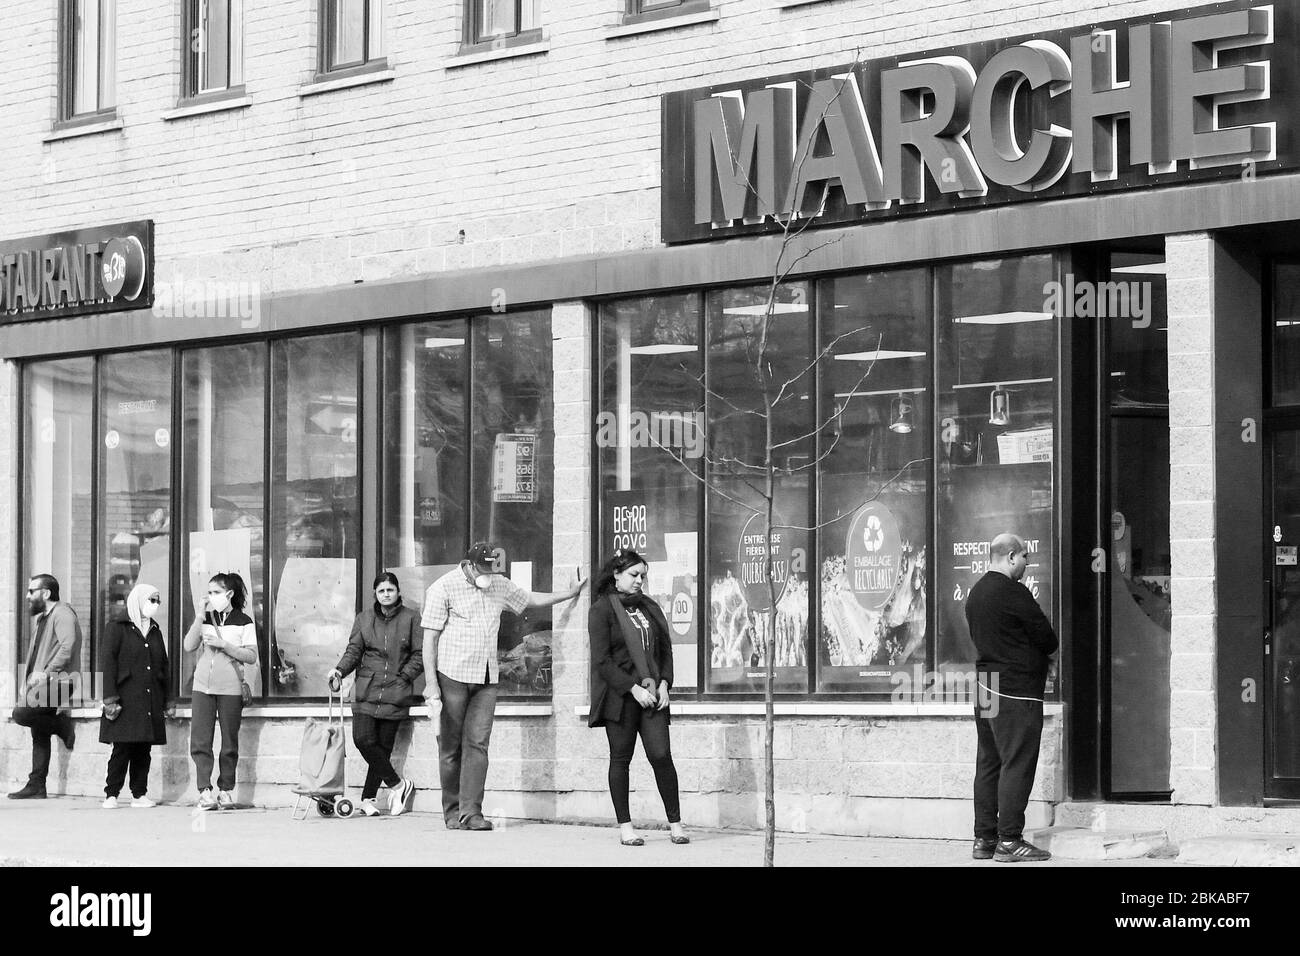 Les gens s'y sont alignés devant un supermarché tout en respectant les distances sociales dans le quartier de travail des immigrants de Park extension à Montréal Canada Banque D'Images